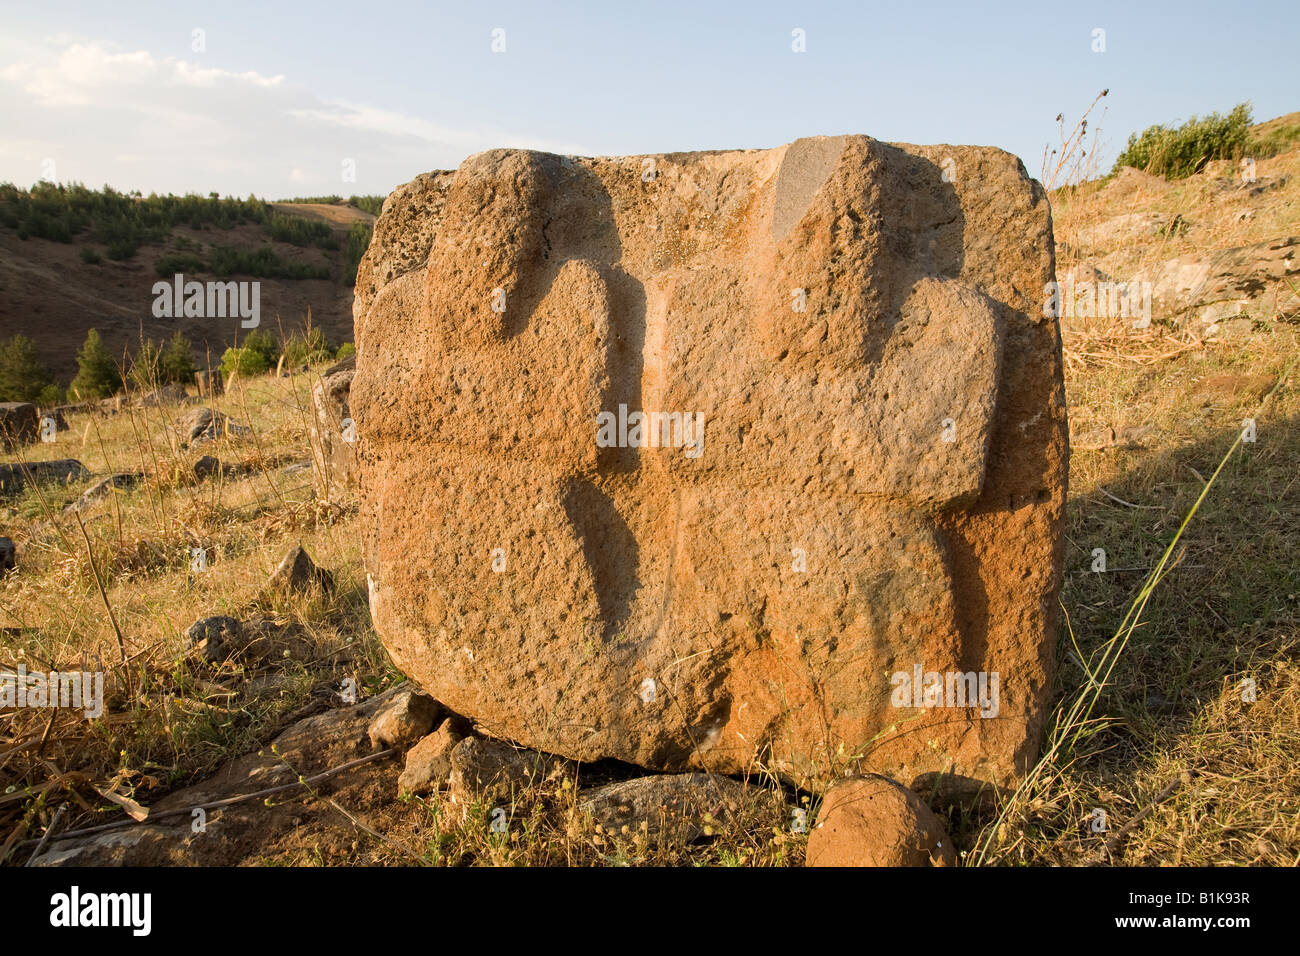 Berg der Götter in der Bildhauerwerkstatt von Yesemek und Freilichtmuseum in der Nähe von Islahiye in der Provinz Gaziantep, Türkei S E Stockfoto